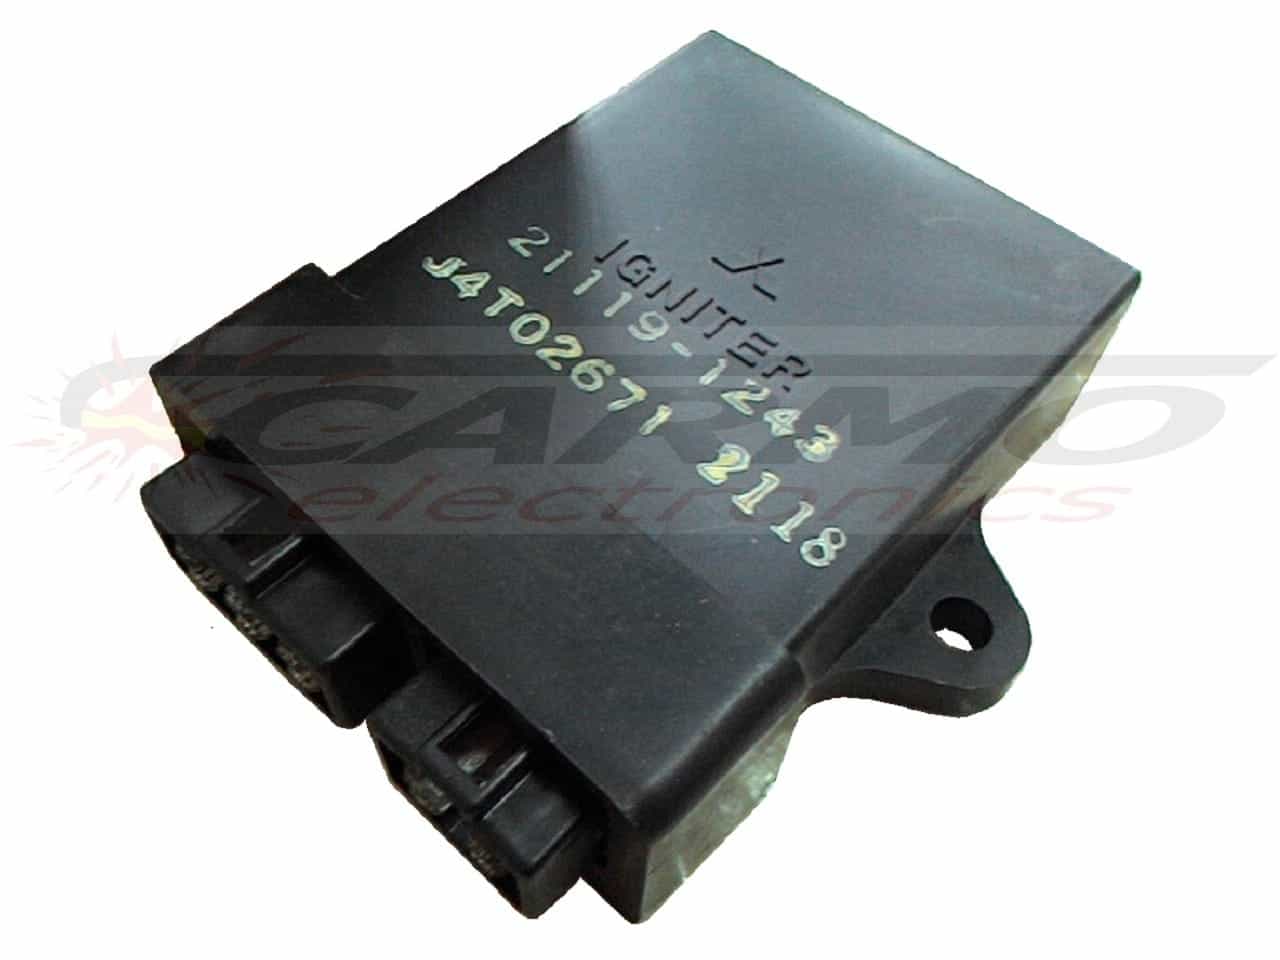 ZX10 ZX-10 tomcat CDI TCI ignitor ignition unit (21119-1243, J4T02671)